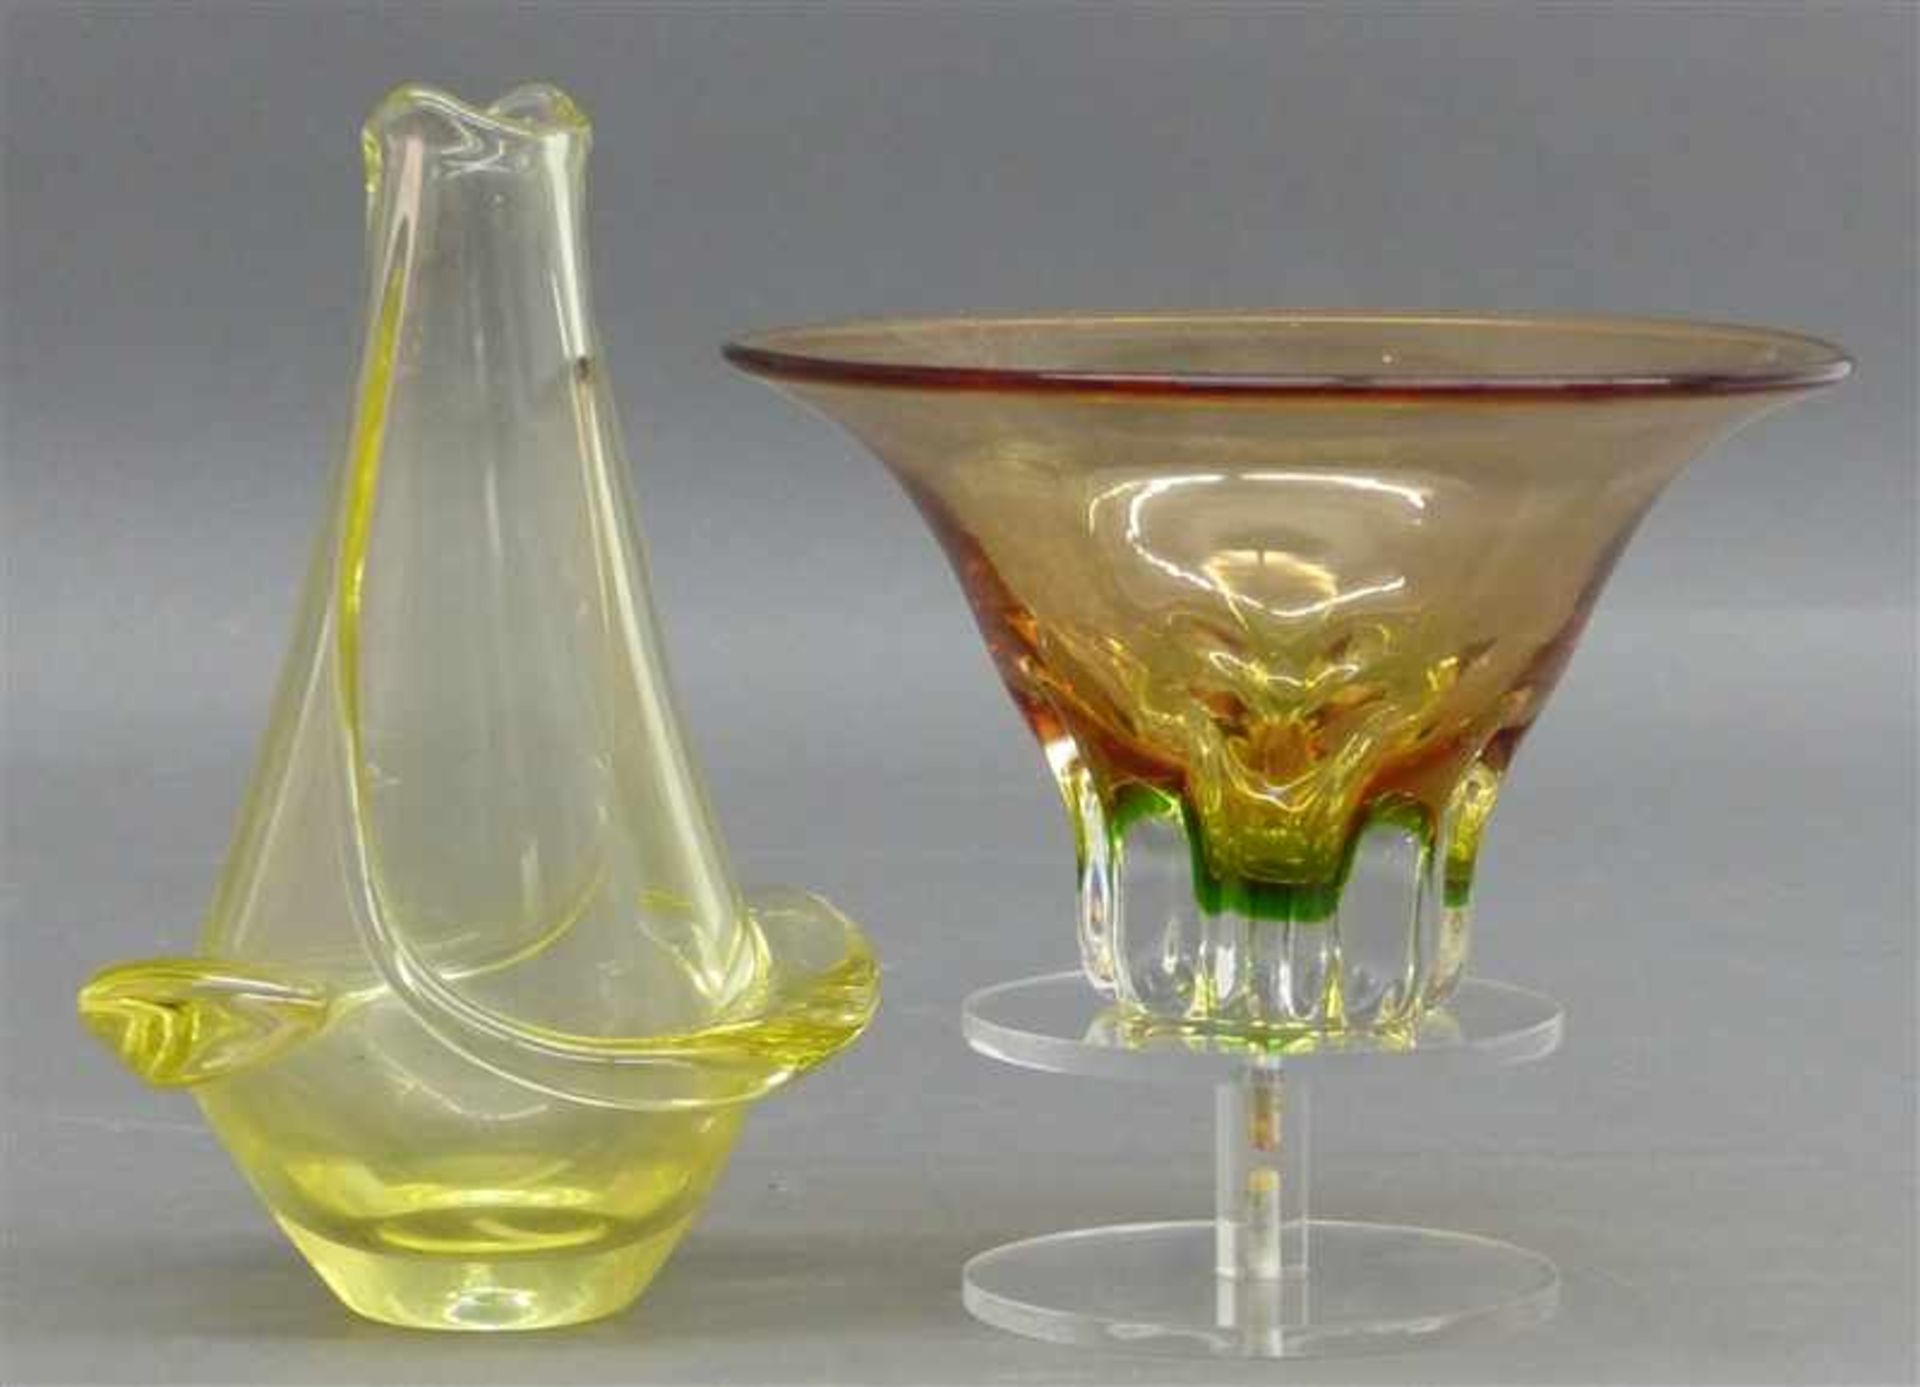 KonvolutMurano, Glas, 1 gelblich eingefärbte Vase, 1 Schale bräunlich, wohl 70er/80er Jahre, h 11